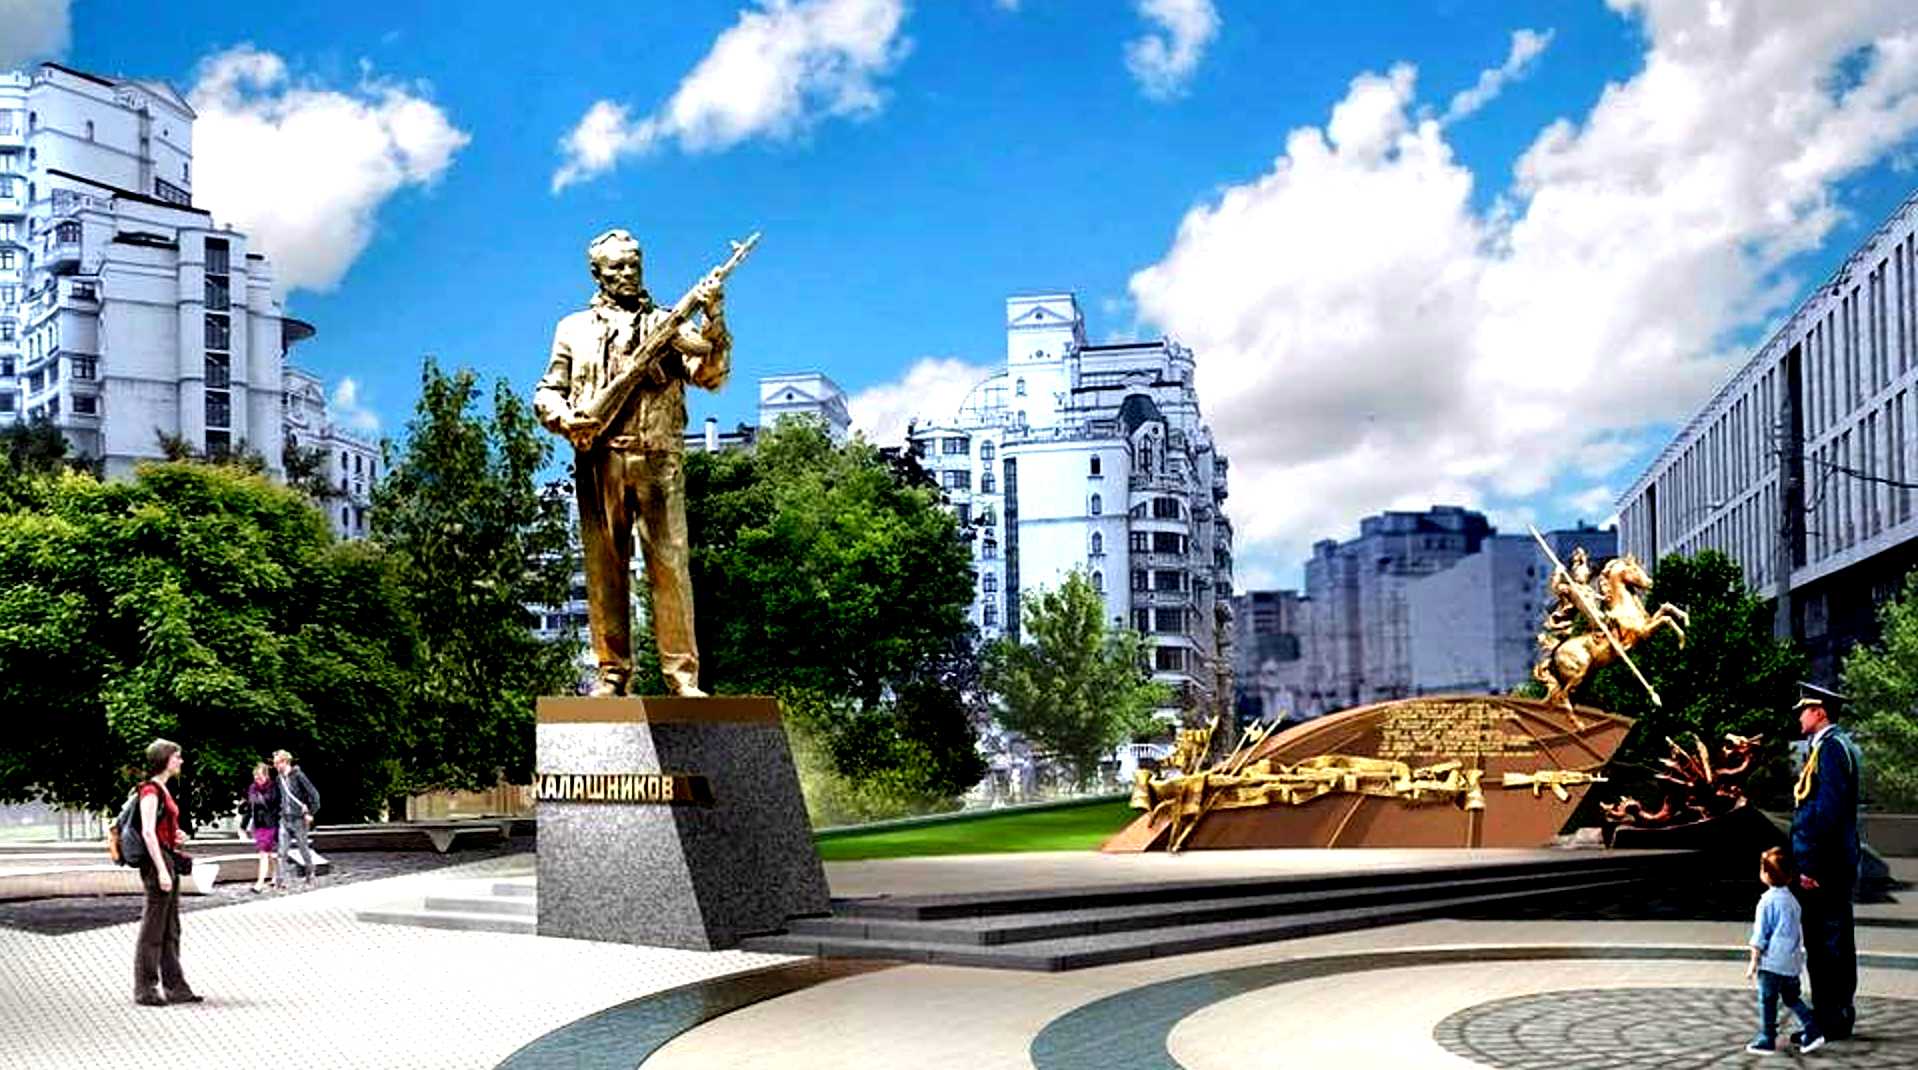 Перед вами памятник установленный в центре москвы. Памятник Михаилу Калашникову в Москве. Памятник Калашникову в Москве оружейный переулок.